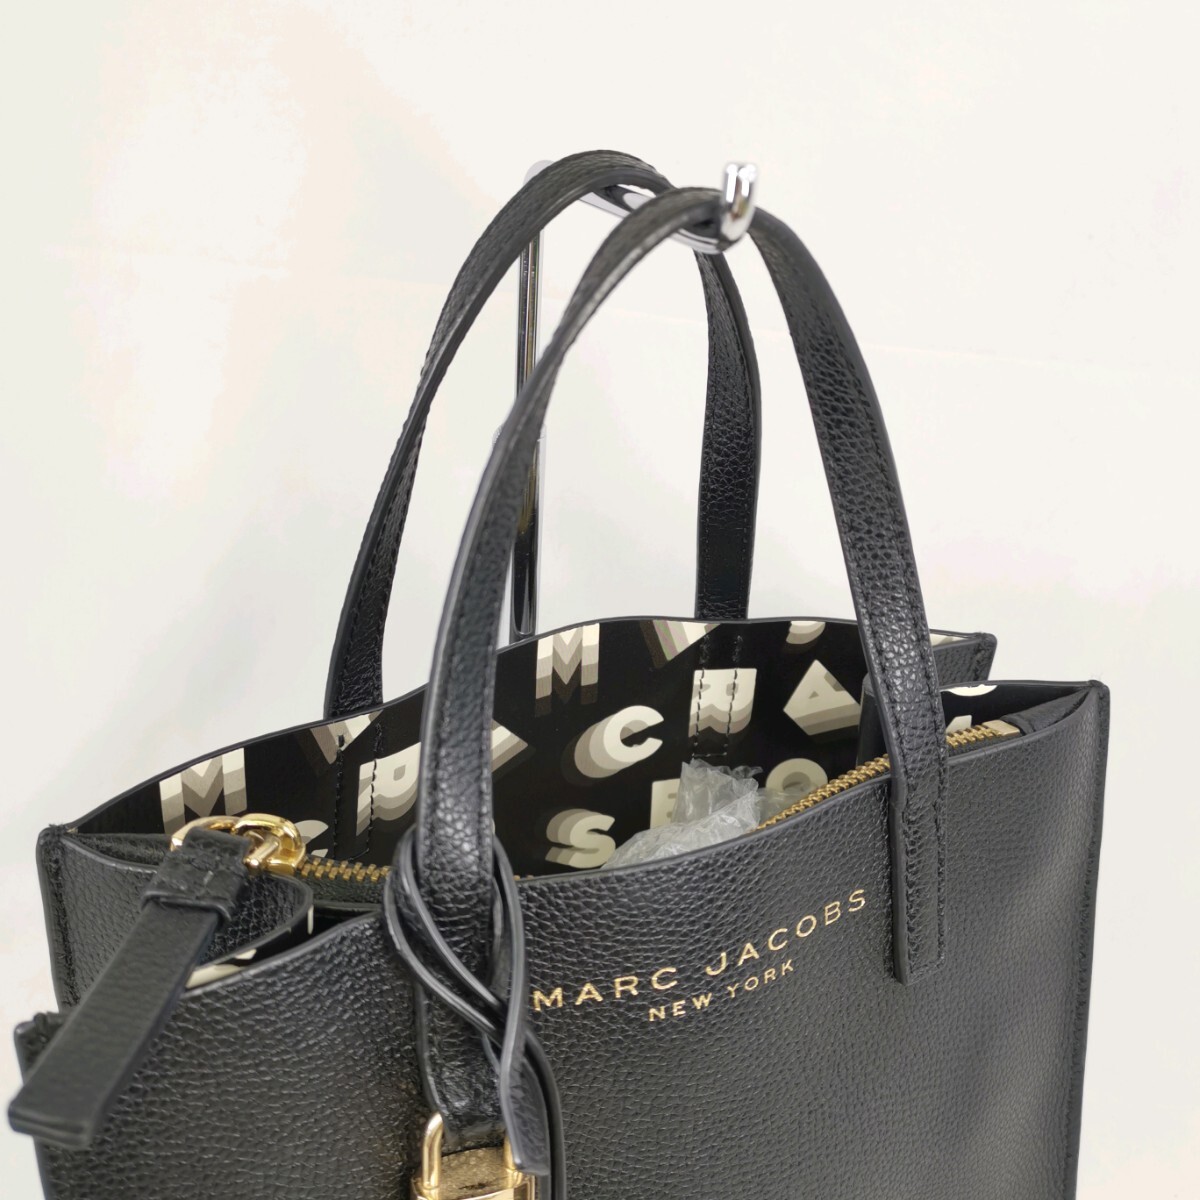 M ×[ товар разряд :B] Mark Jacobs MARC JACOBS подкладка общий рисунок Gold металлические принадлежности дизайн логотипа ручная сумочка ручная сумка большая сумка женщина сумка чёрный цвет серия 